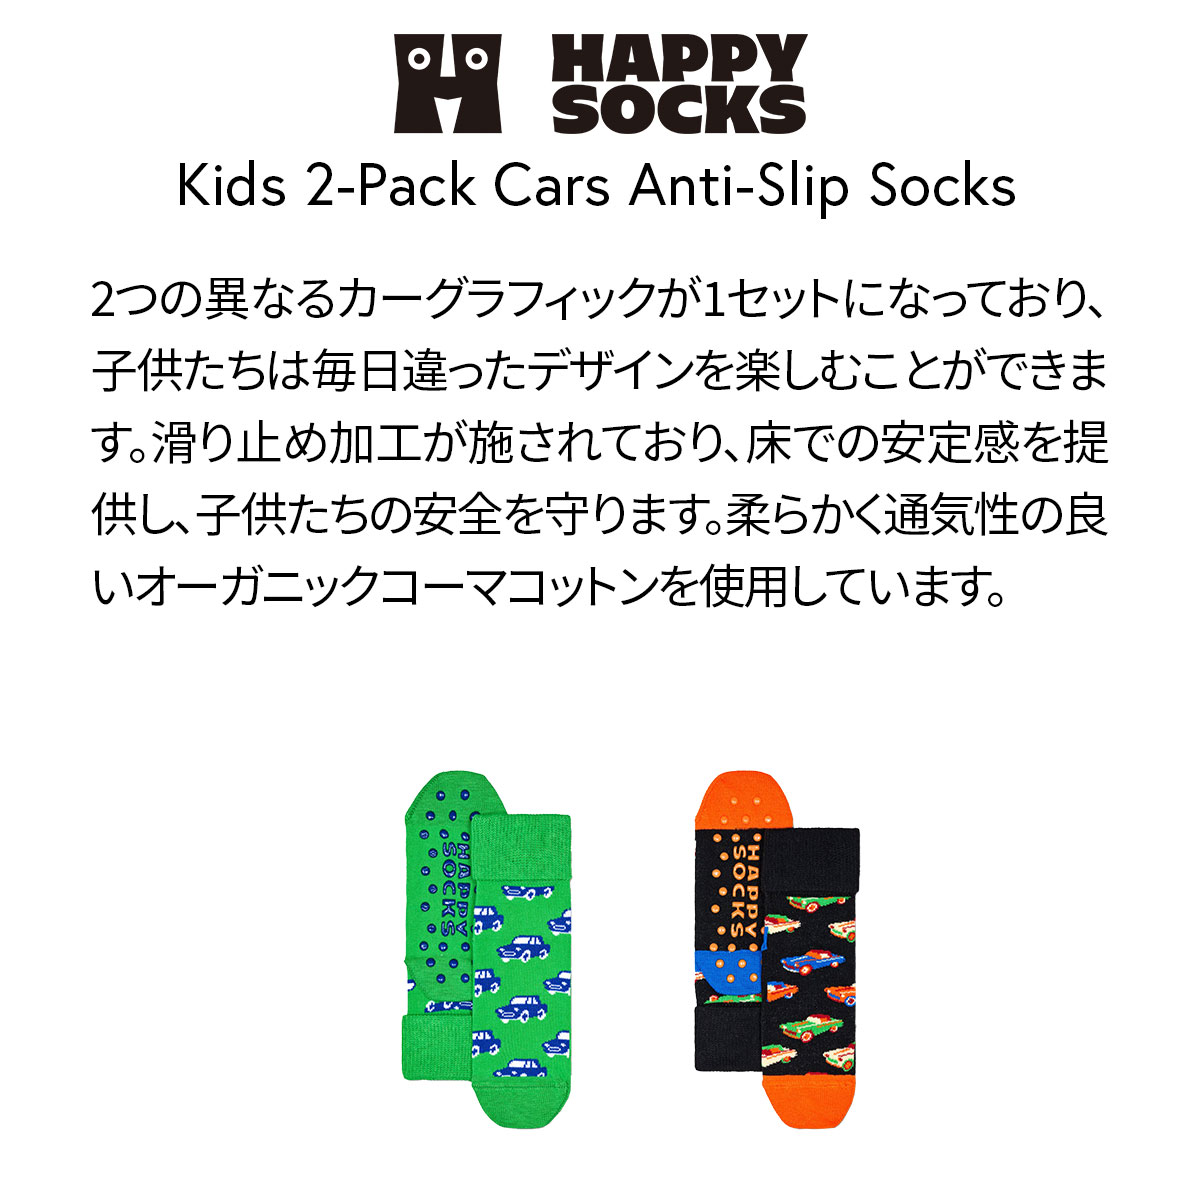 【2足セット】【24SS】Happy Socks ハッピーソックス Kids Cars ( カー )  足底滑り止め付き 2-Pack Low Socks 2足組 車柄 子供 ショート丈 綿混 ソックス KIDS ジュニア キッズ